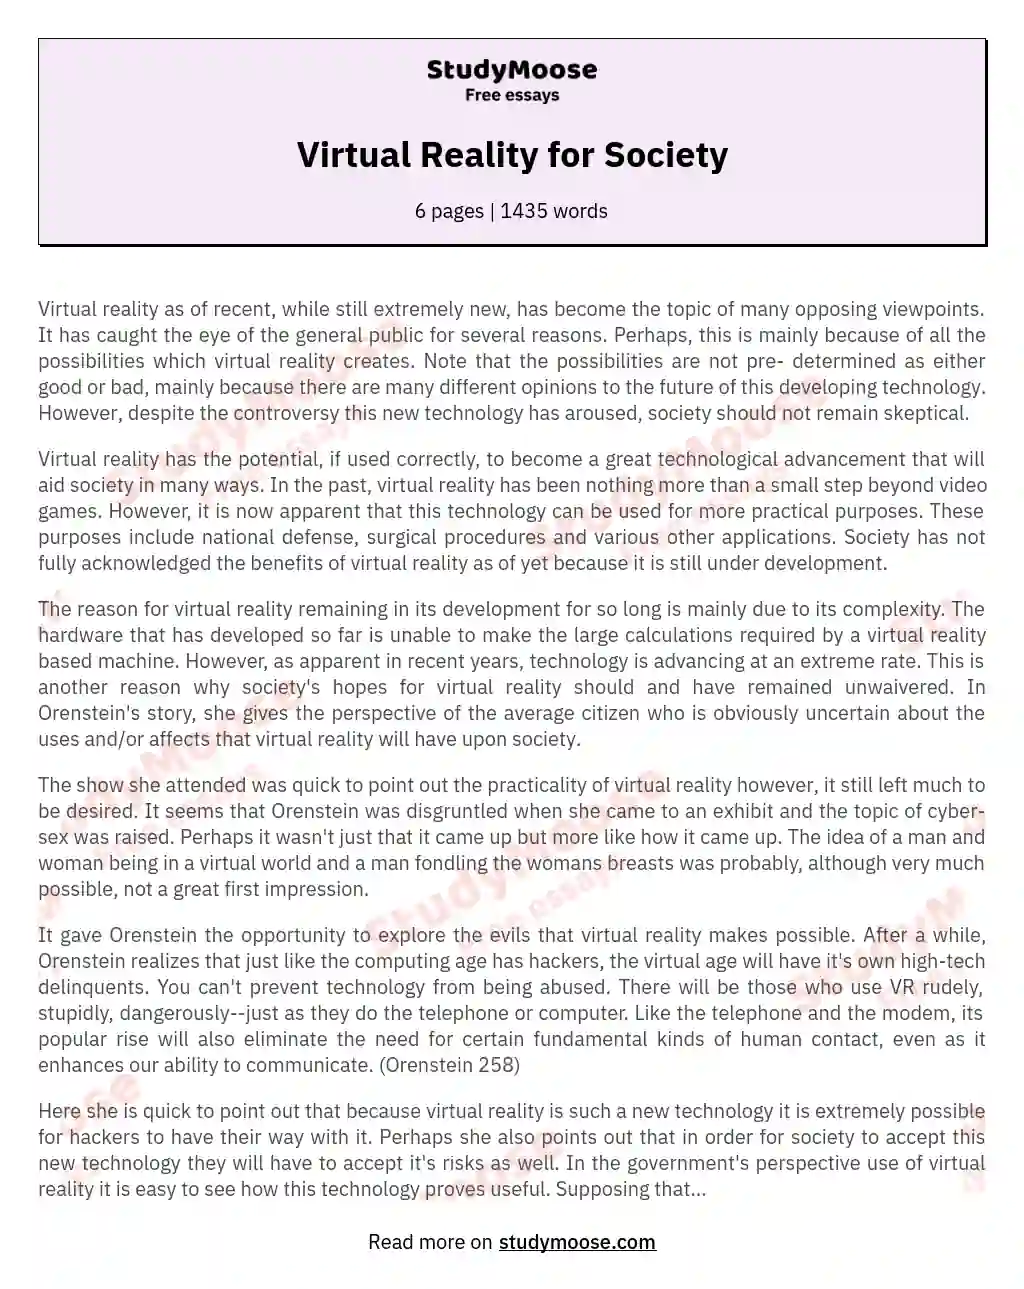 Virtual Reality for Society essay